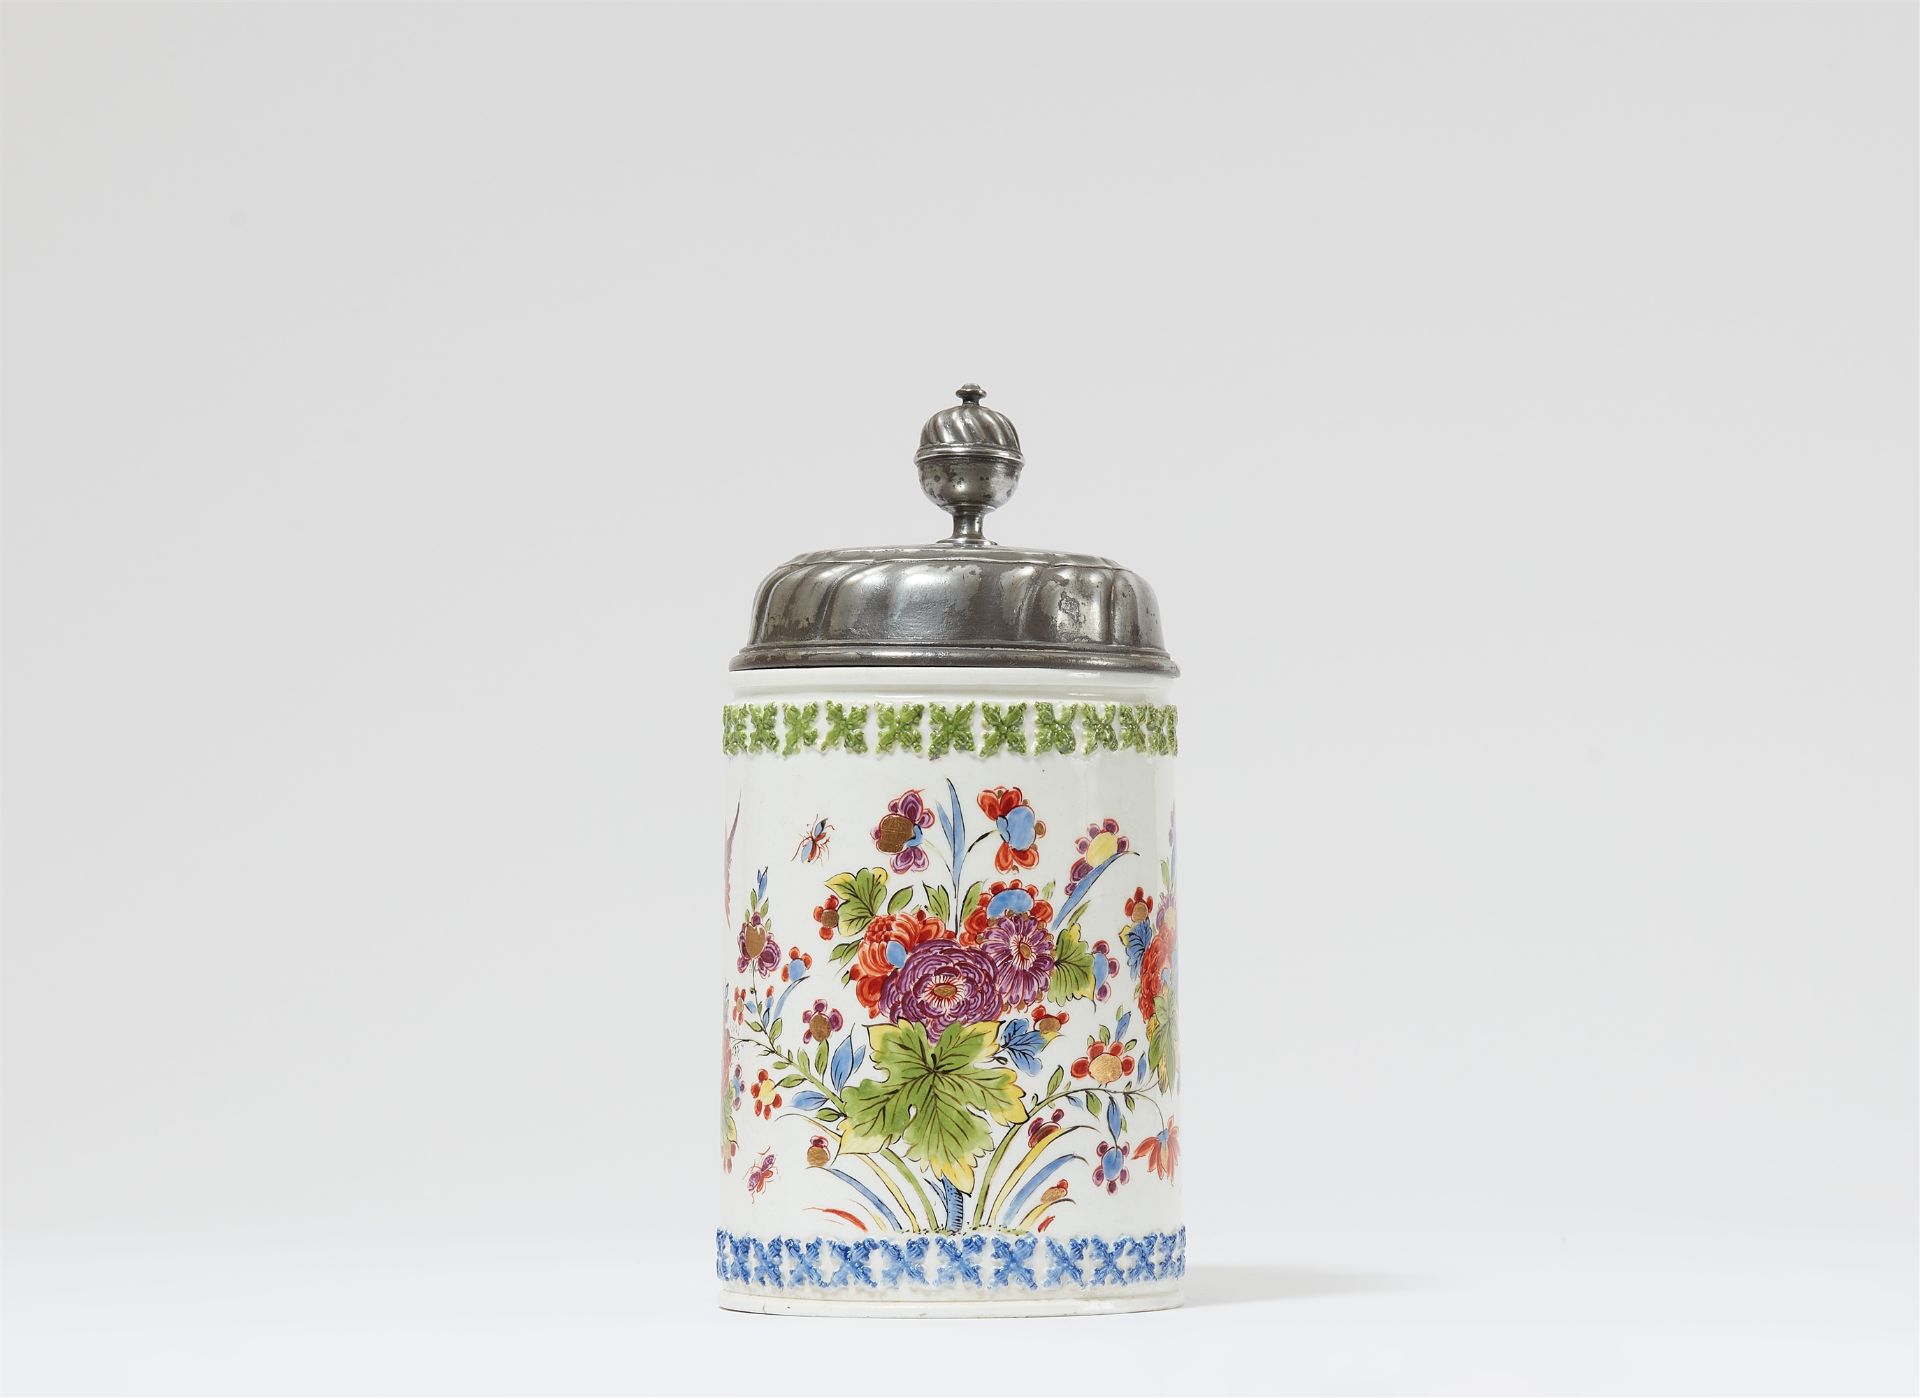 A Meissen porcelain tankard with "indianische blumen"